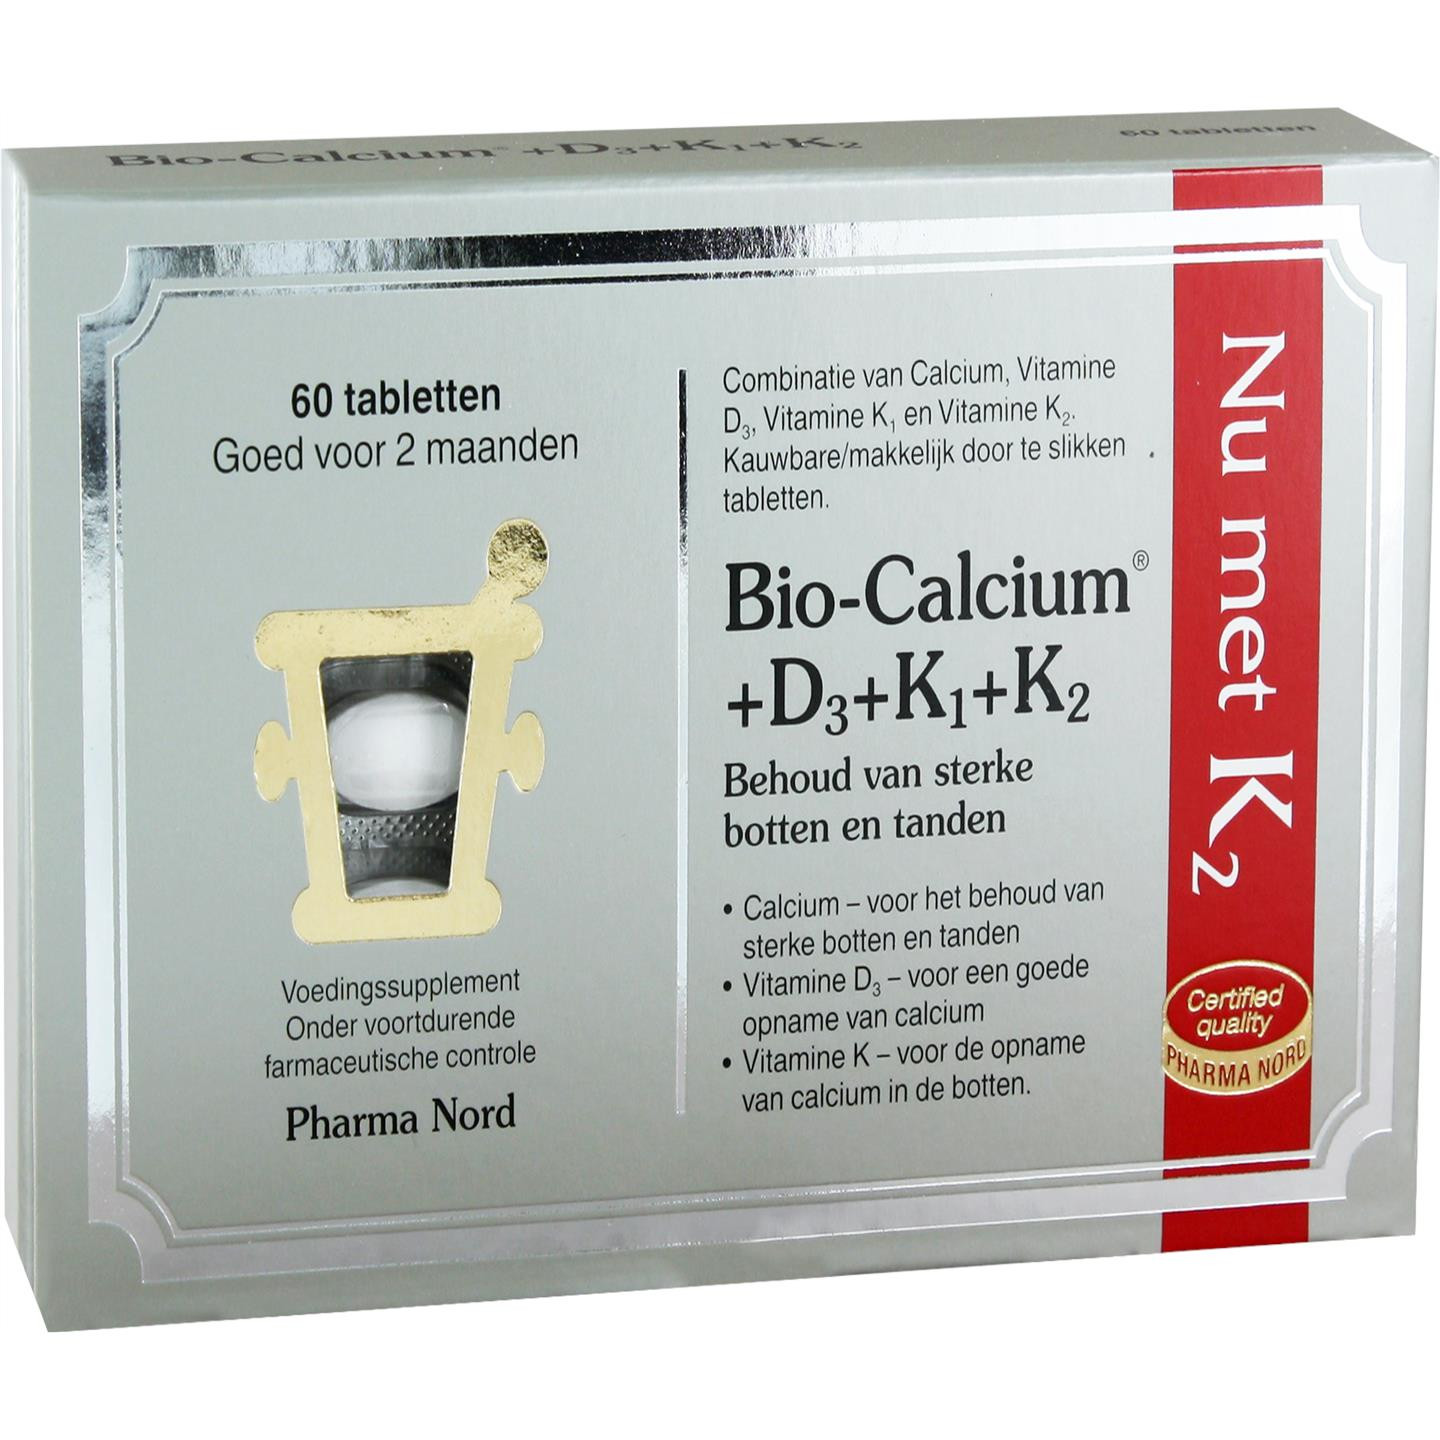 Bio-Calcium + D3 + K1 + K2